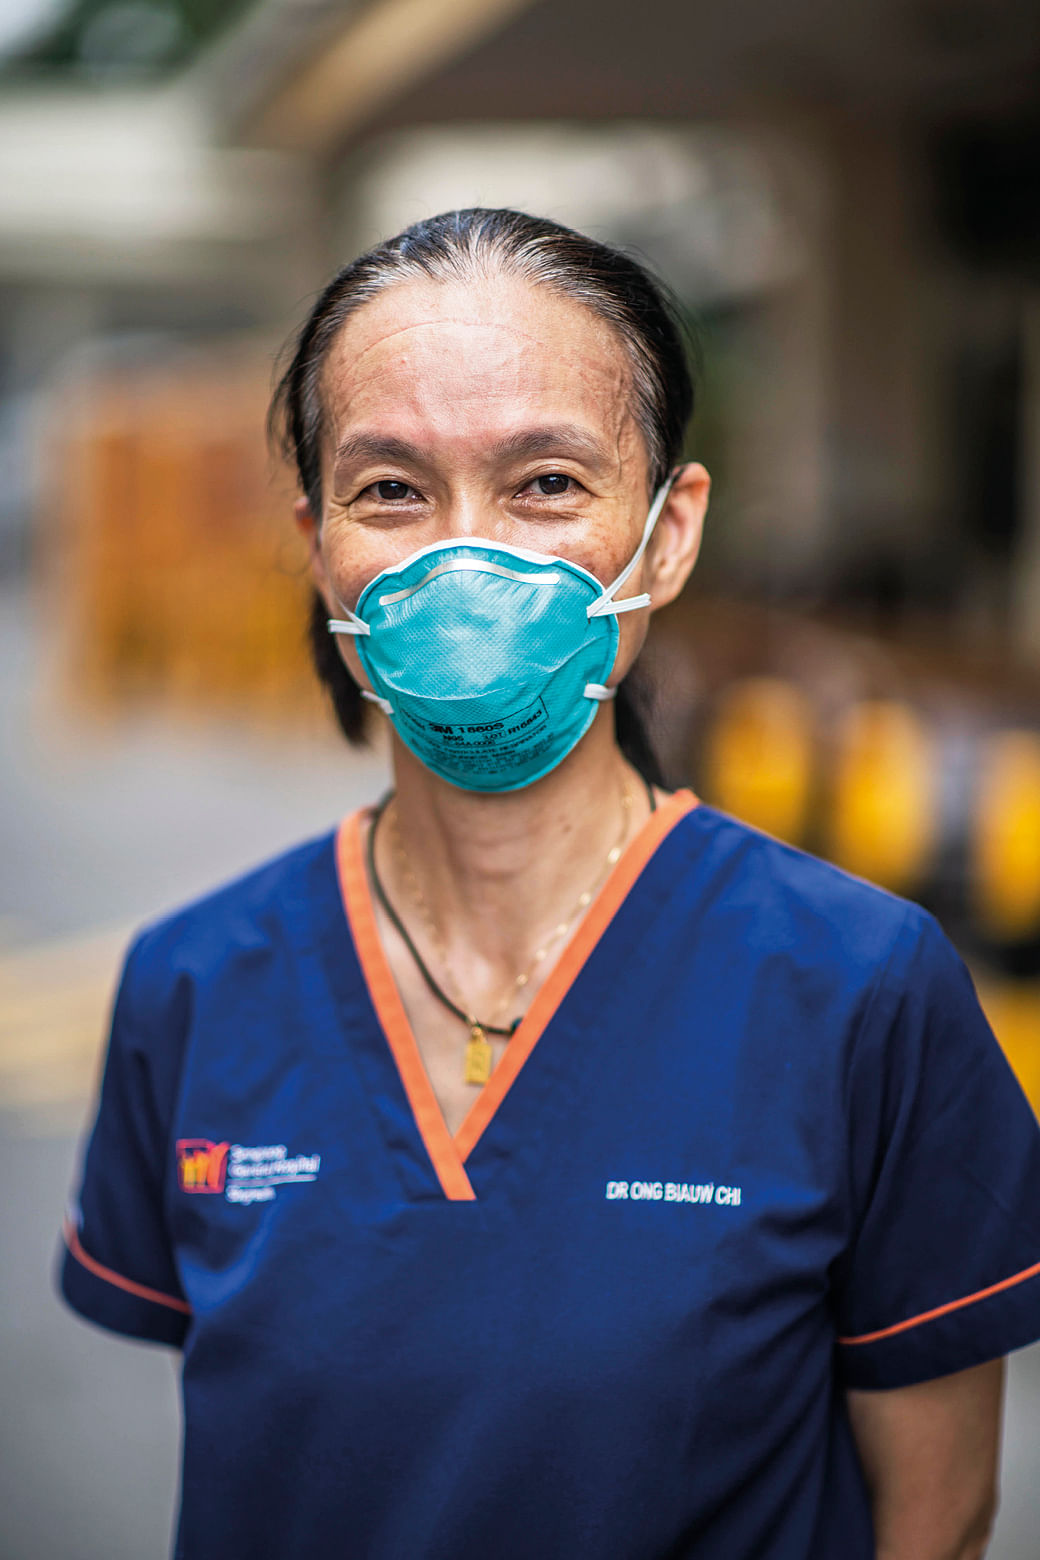 Ong Biauw Chi_Sengkang General Hospital_Women Of The Year 2020_Alex Chua